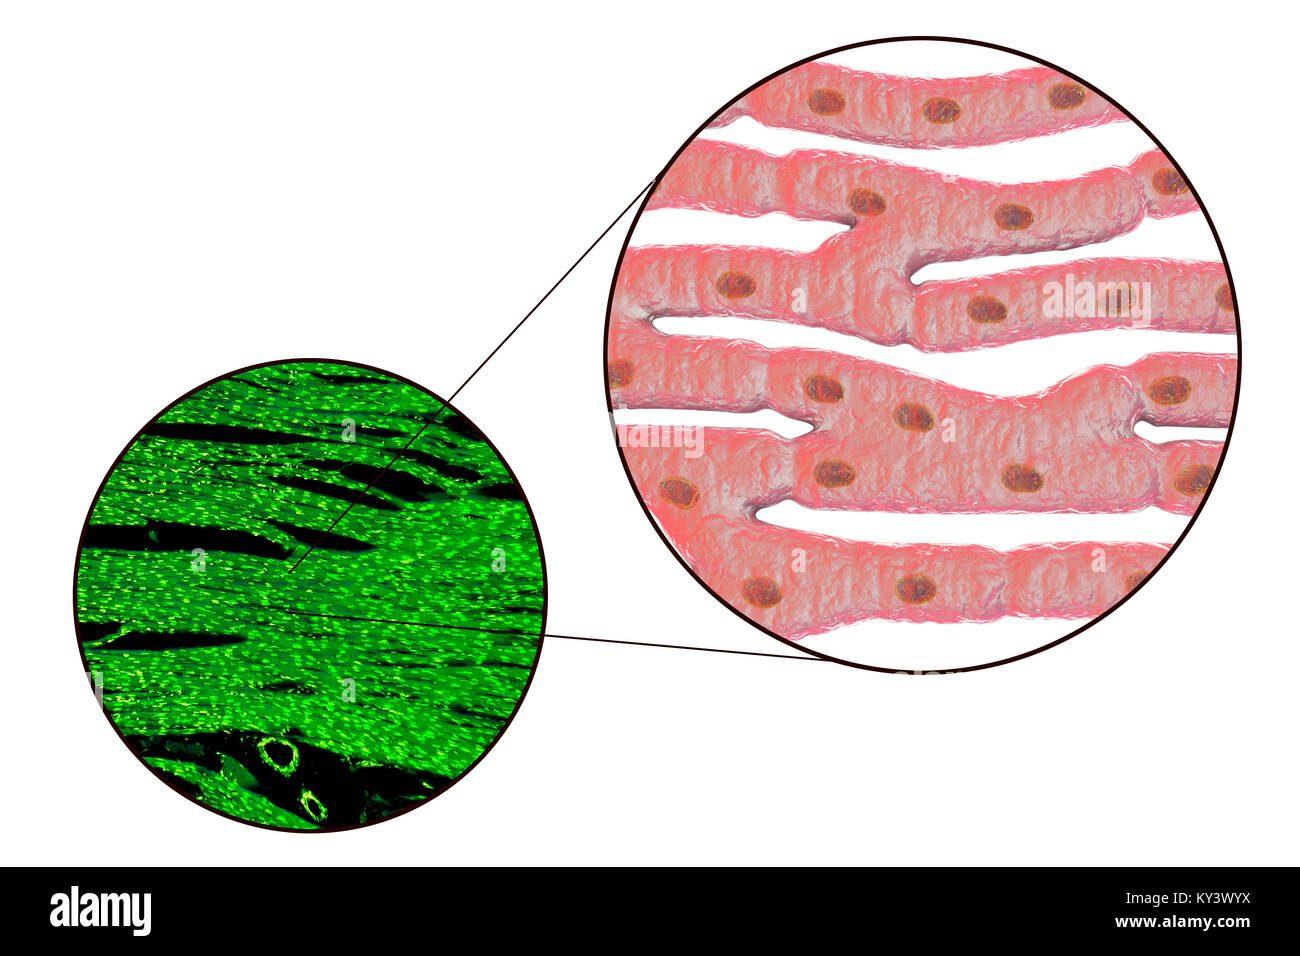 Herzmuskel Struktur, Computer Bild und Licht schliffbild. Herzmuskel besteht aus Spindelförmige Zellen in unregelmäßigen Bundles zusammengefasst. Grenzen zwischen den einzelnen Zellen sind schwach sichtbar. Jede Zelle enthält einen Kern, sichtbar als dunkle Flecken. Herzmuskel ist eine spezialisierte Muskelgewebe, die regelmäßig und kontinuierlich ohne ermüdenden Vertrag kann. Stockfoto